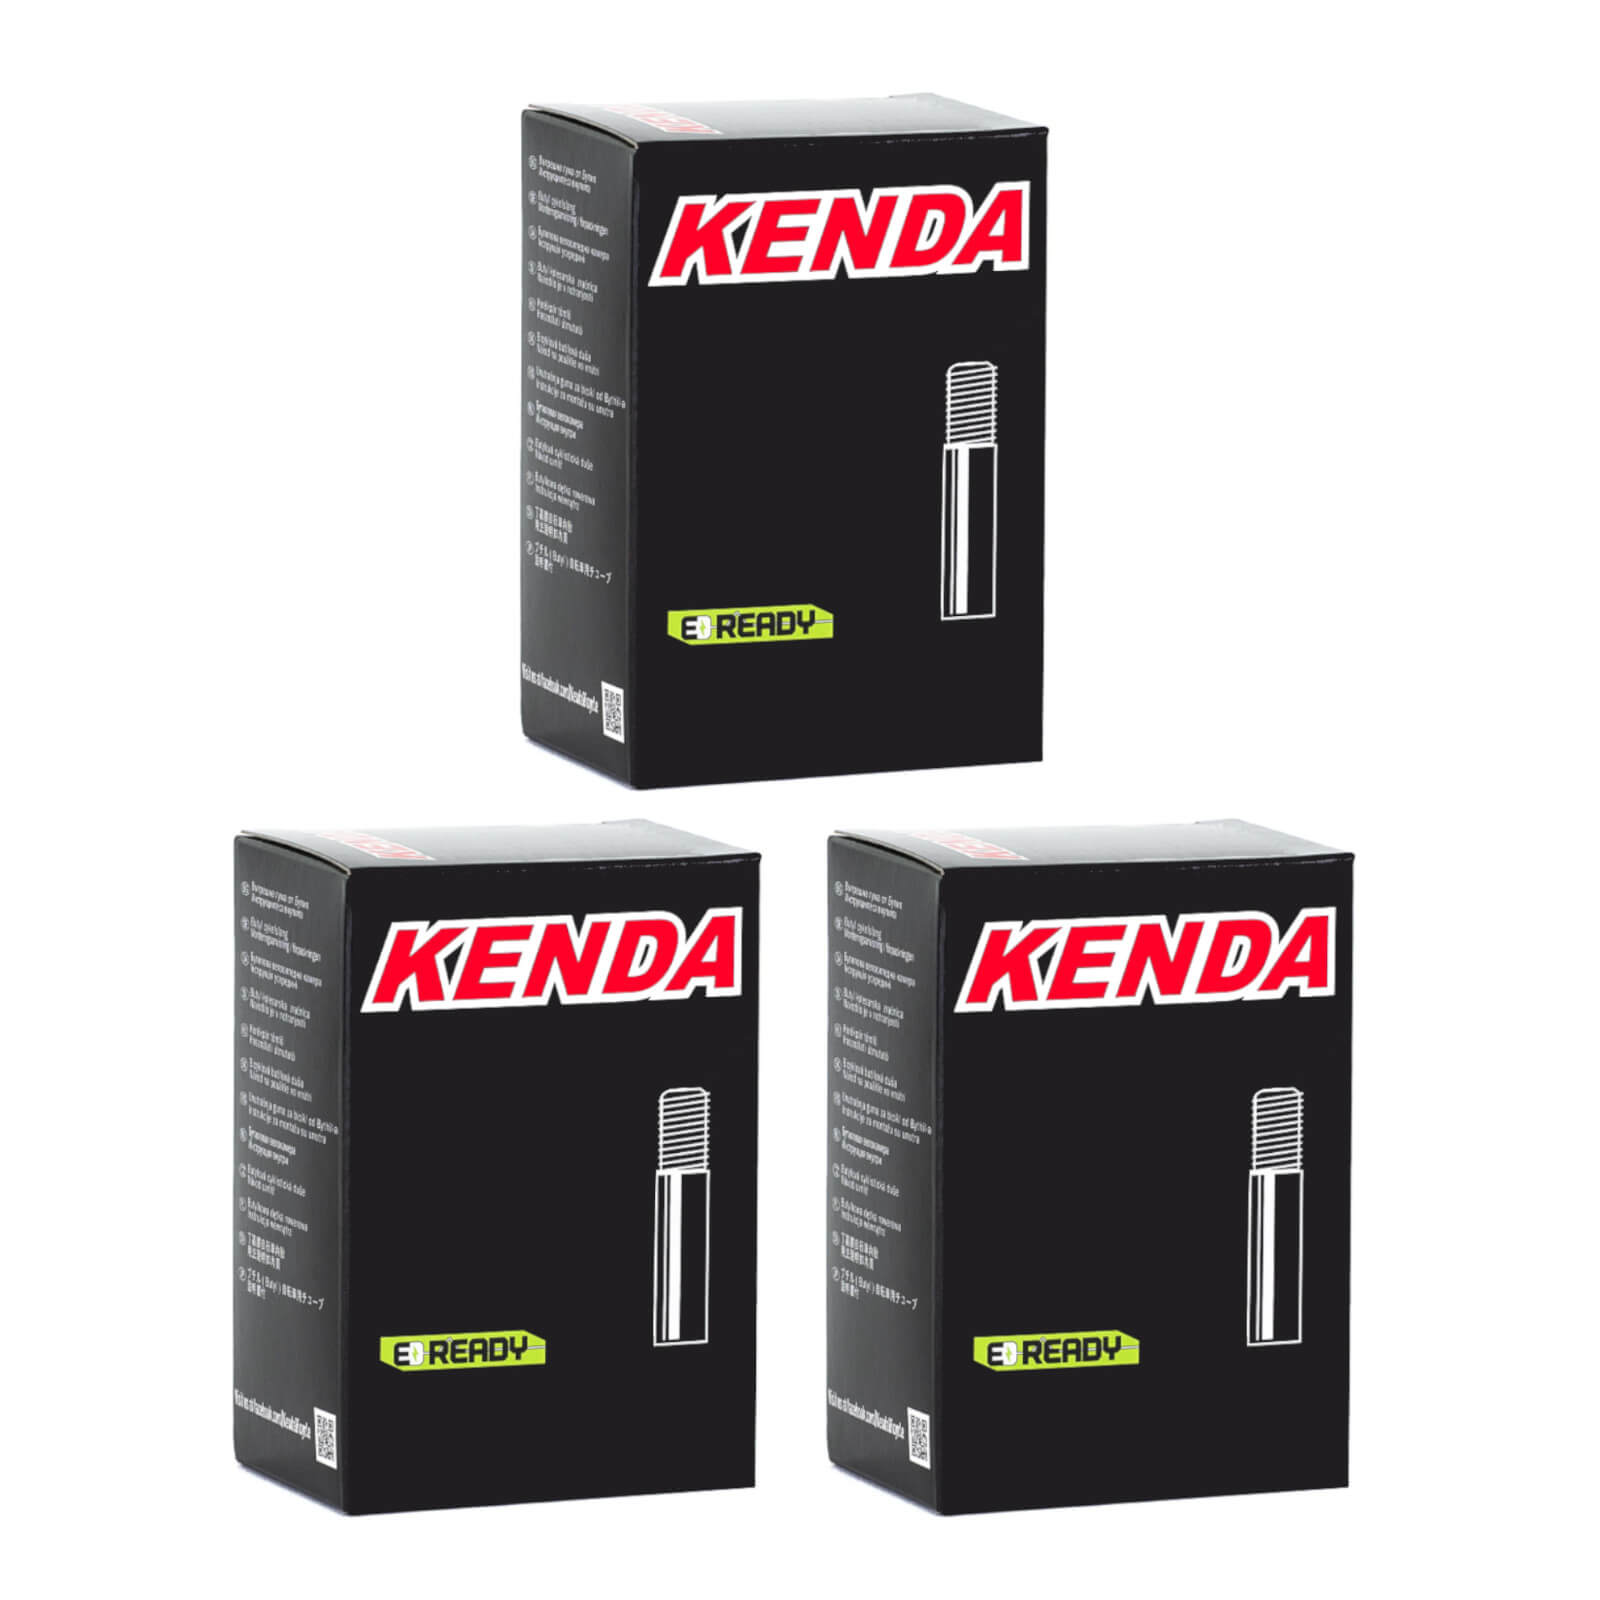 Kenda 24x2.0-2.4" 24 Inch Schrader Valve Bike Inner Tube Pack of 3